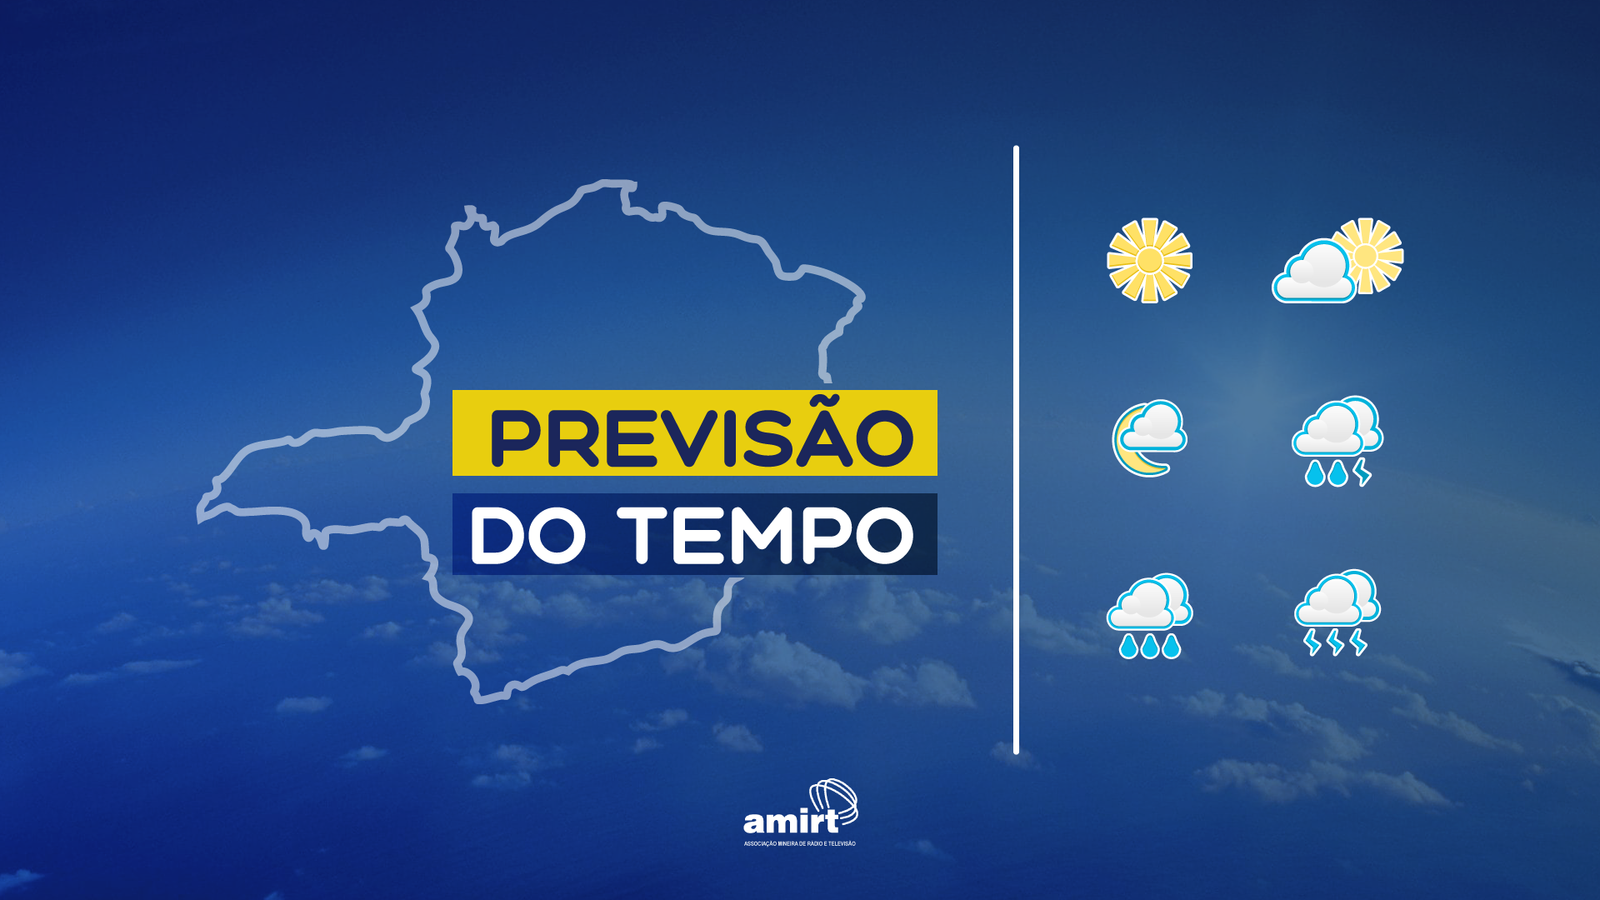 Previsão do tempo em Minas Gerais: saiba como fica o tempo neste sábado (25/11)